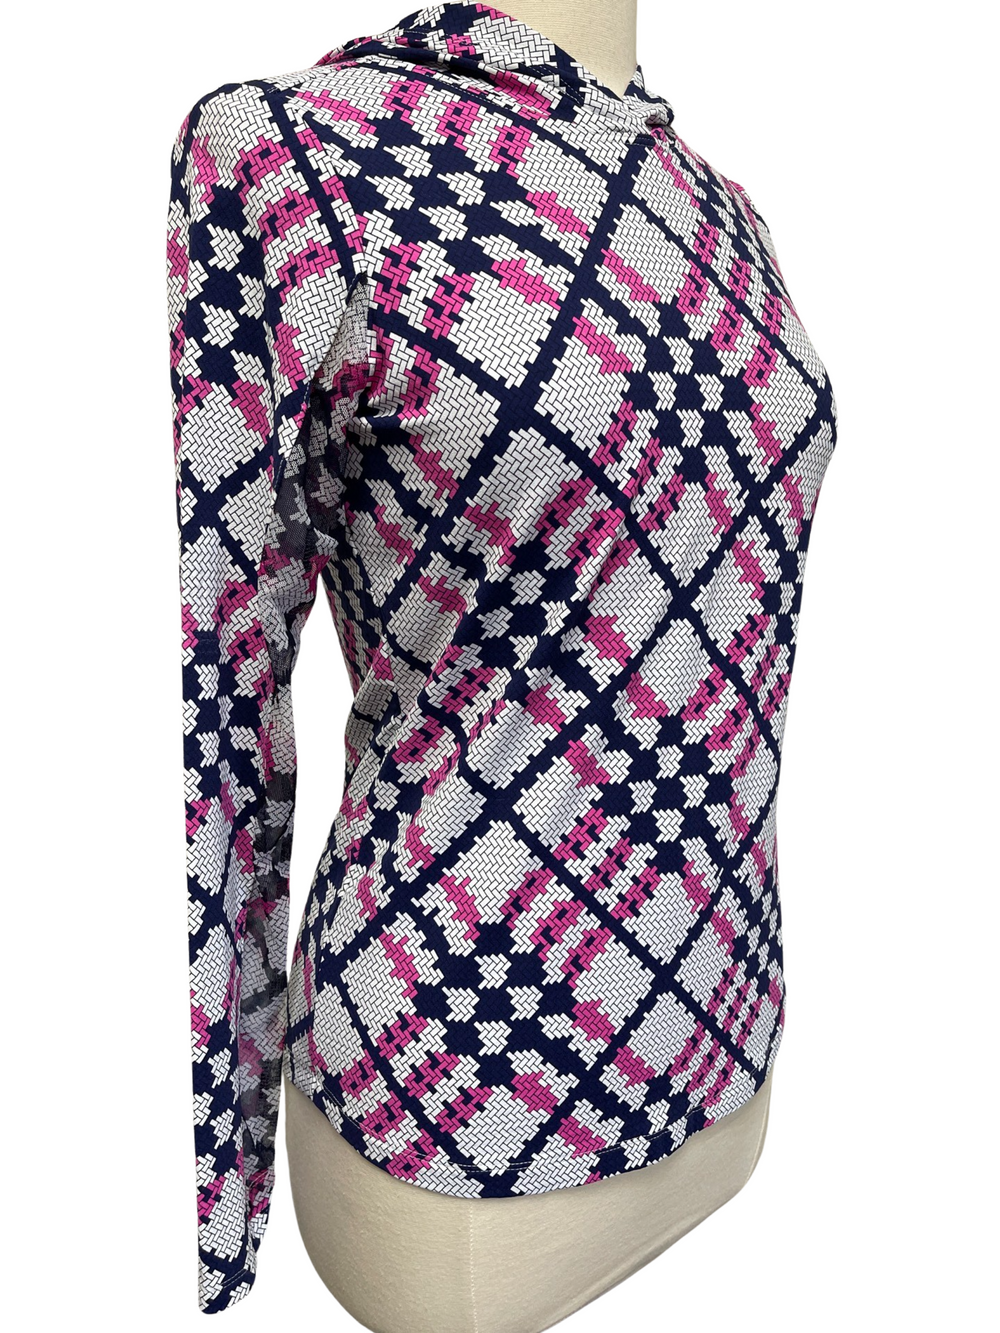 IBKUL Sonika Print Hooded Long Sleeve- Pink/Navy - Size Small - Skorzie